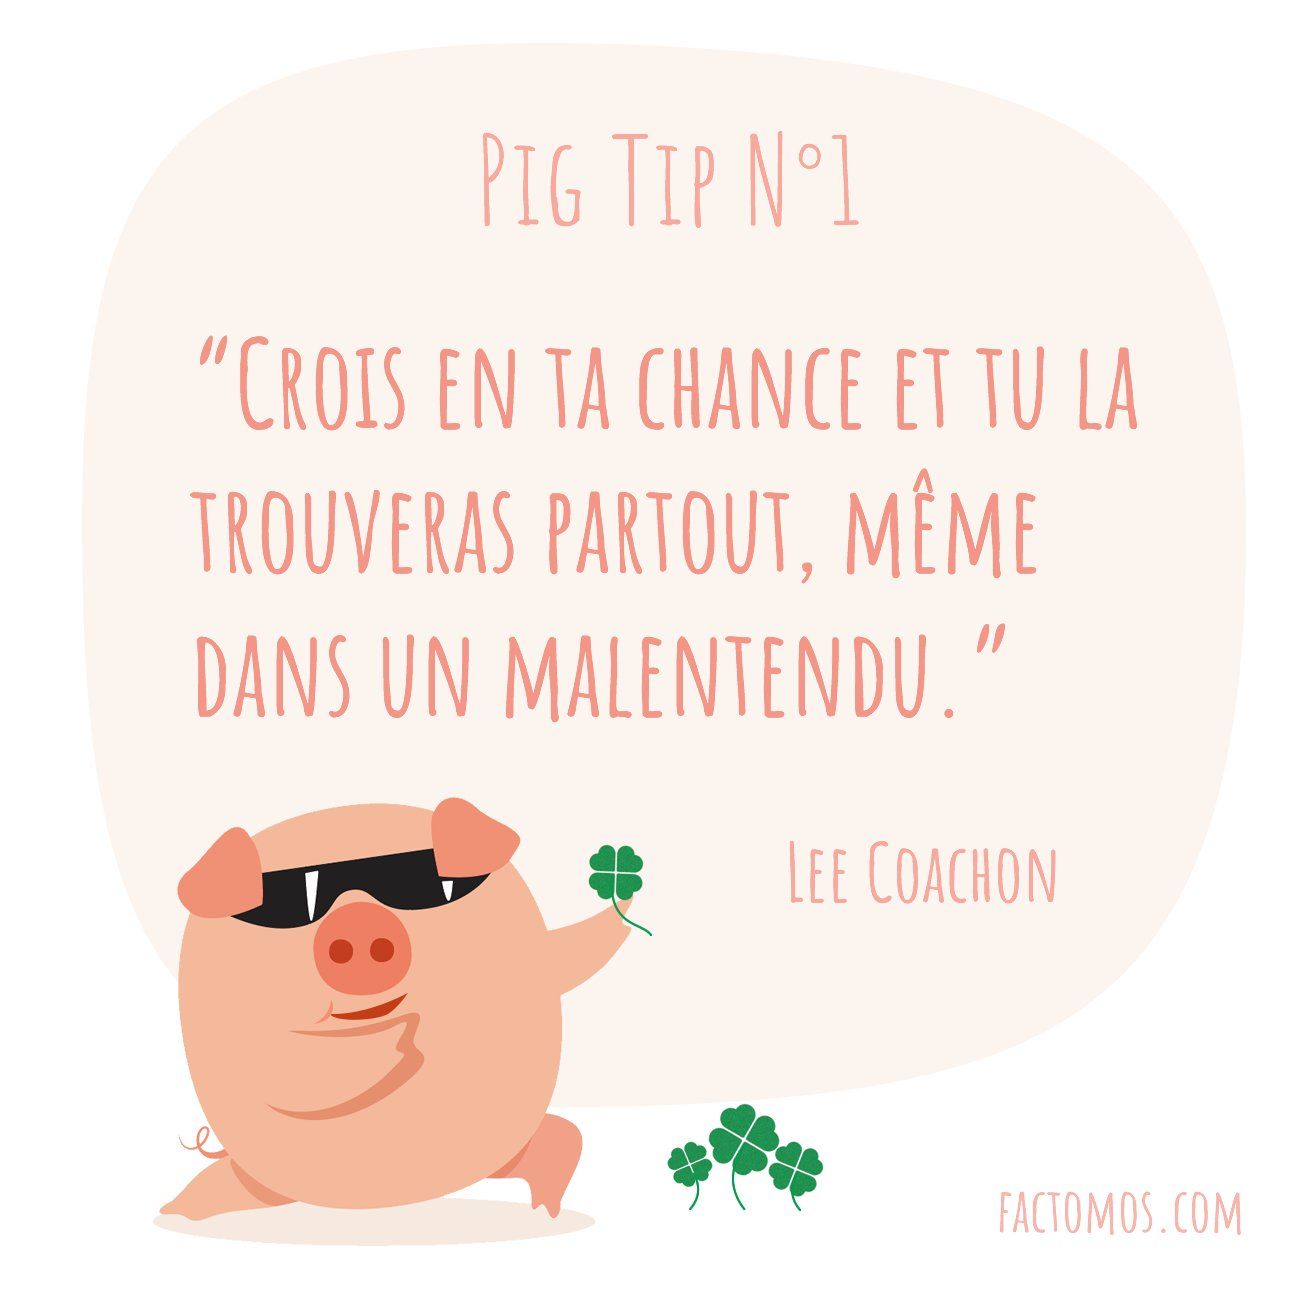 Pig Tip #1